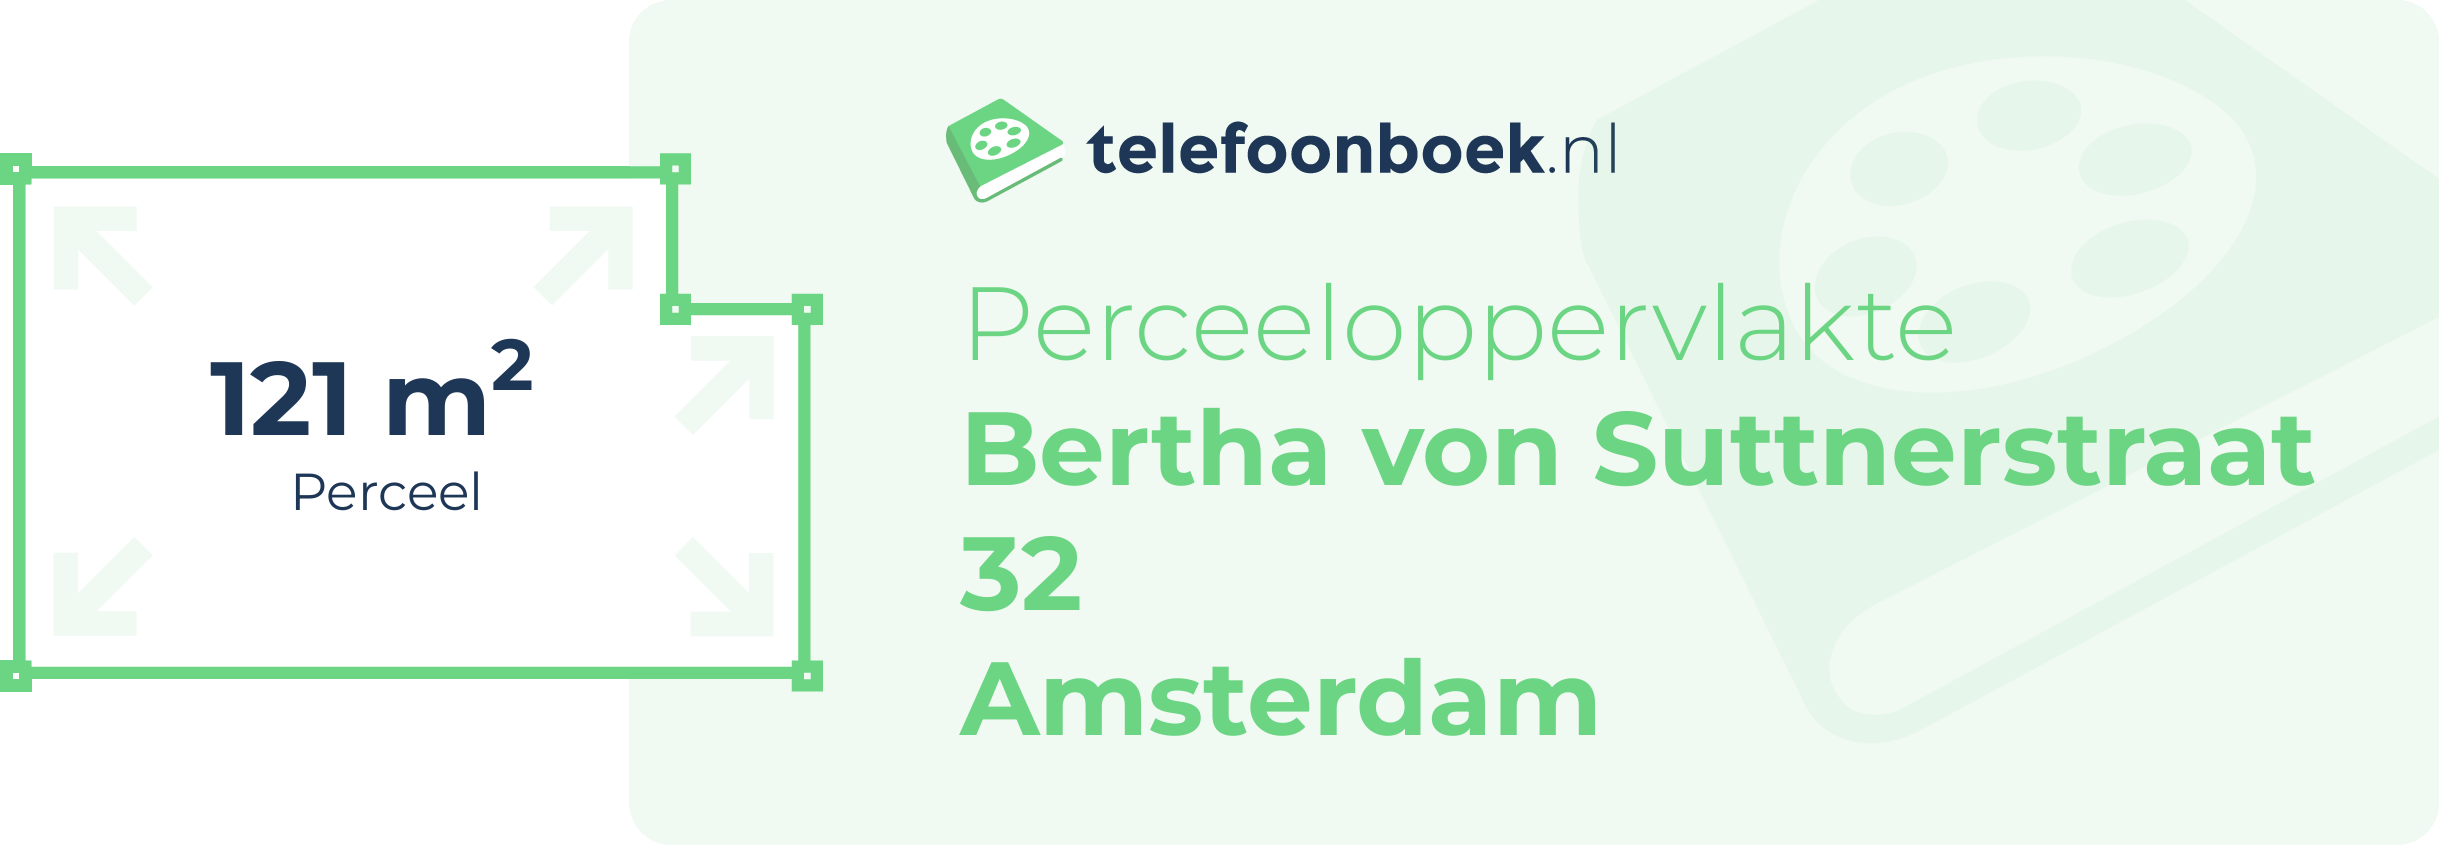 Perceeloppervlakte Bertha Von Suttnerstraat 32 Amsterdam